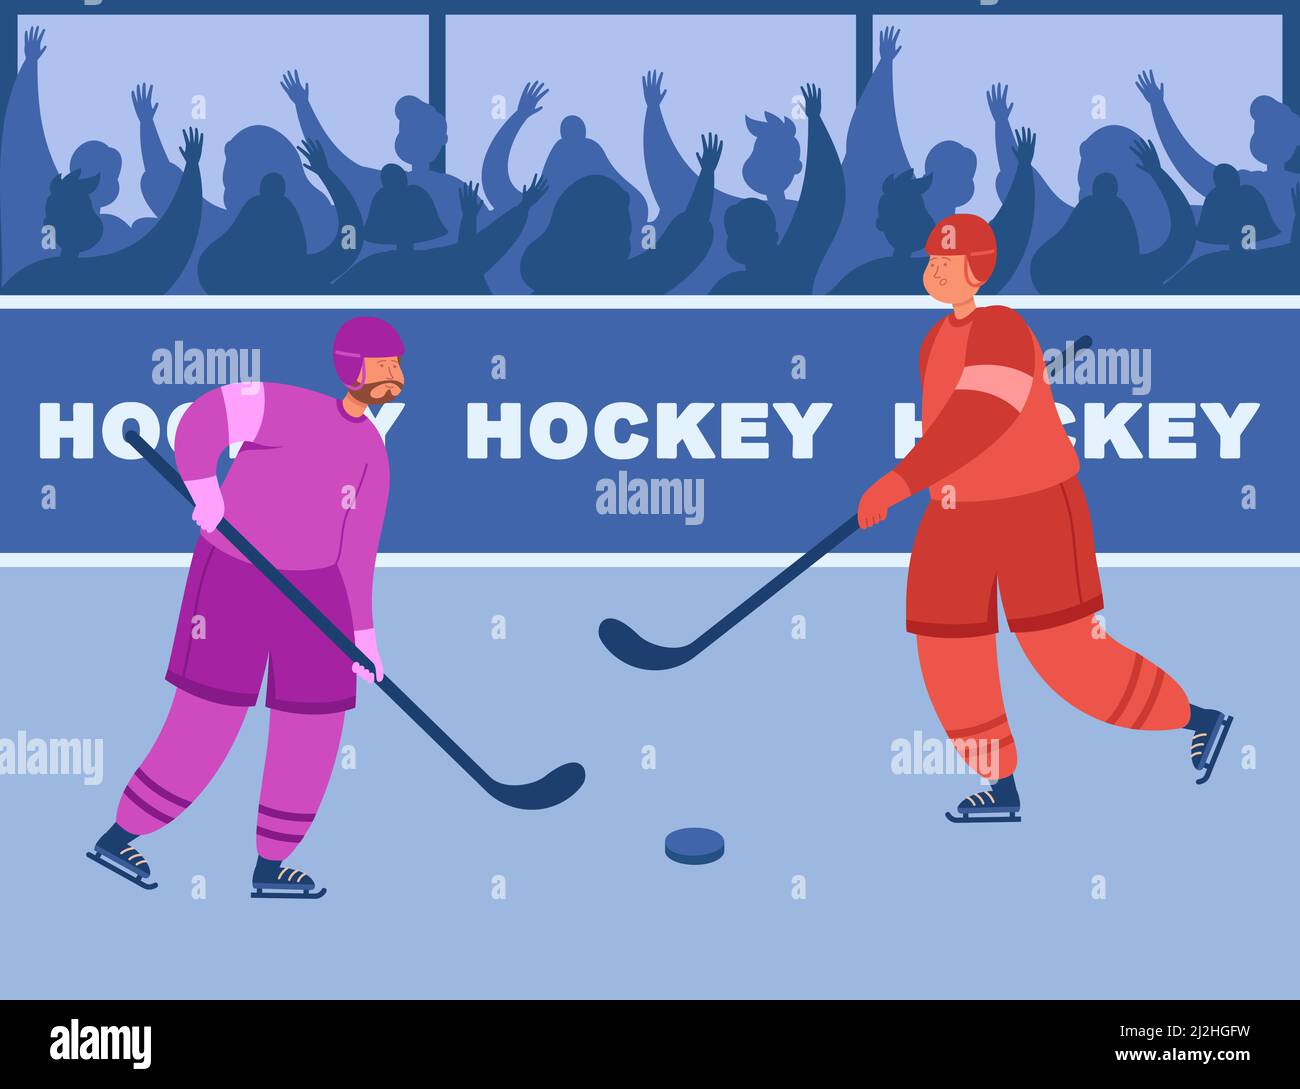 Zwei Eishockeyspieler verschiedener Teams kämpfen um Puck. Eishockey-Meisterschaft mit Zuschauern kostenlose flache Vektor-Illustration. Sport, Meisterschaft, c Stock Vektor